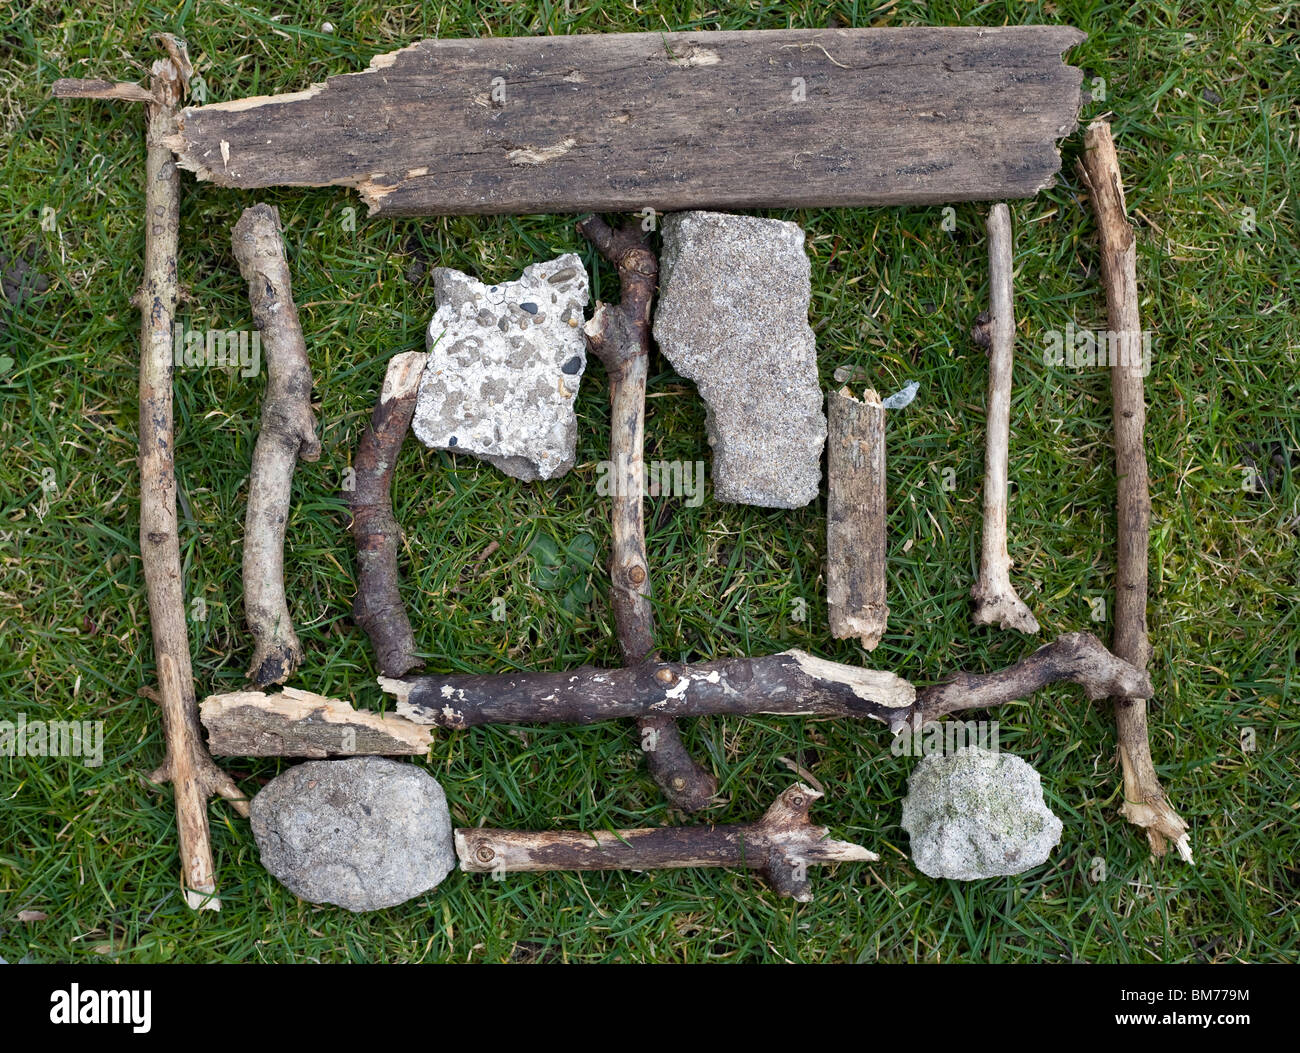 Un proyecto de arte ambiental deberes compuesto de palos y piedras sobre un fondo de hierba Foto de stock